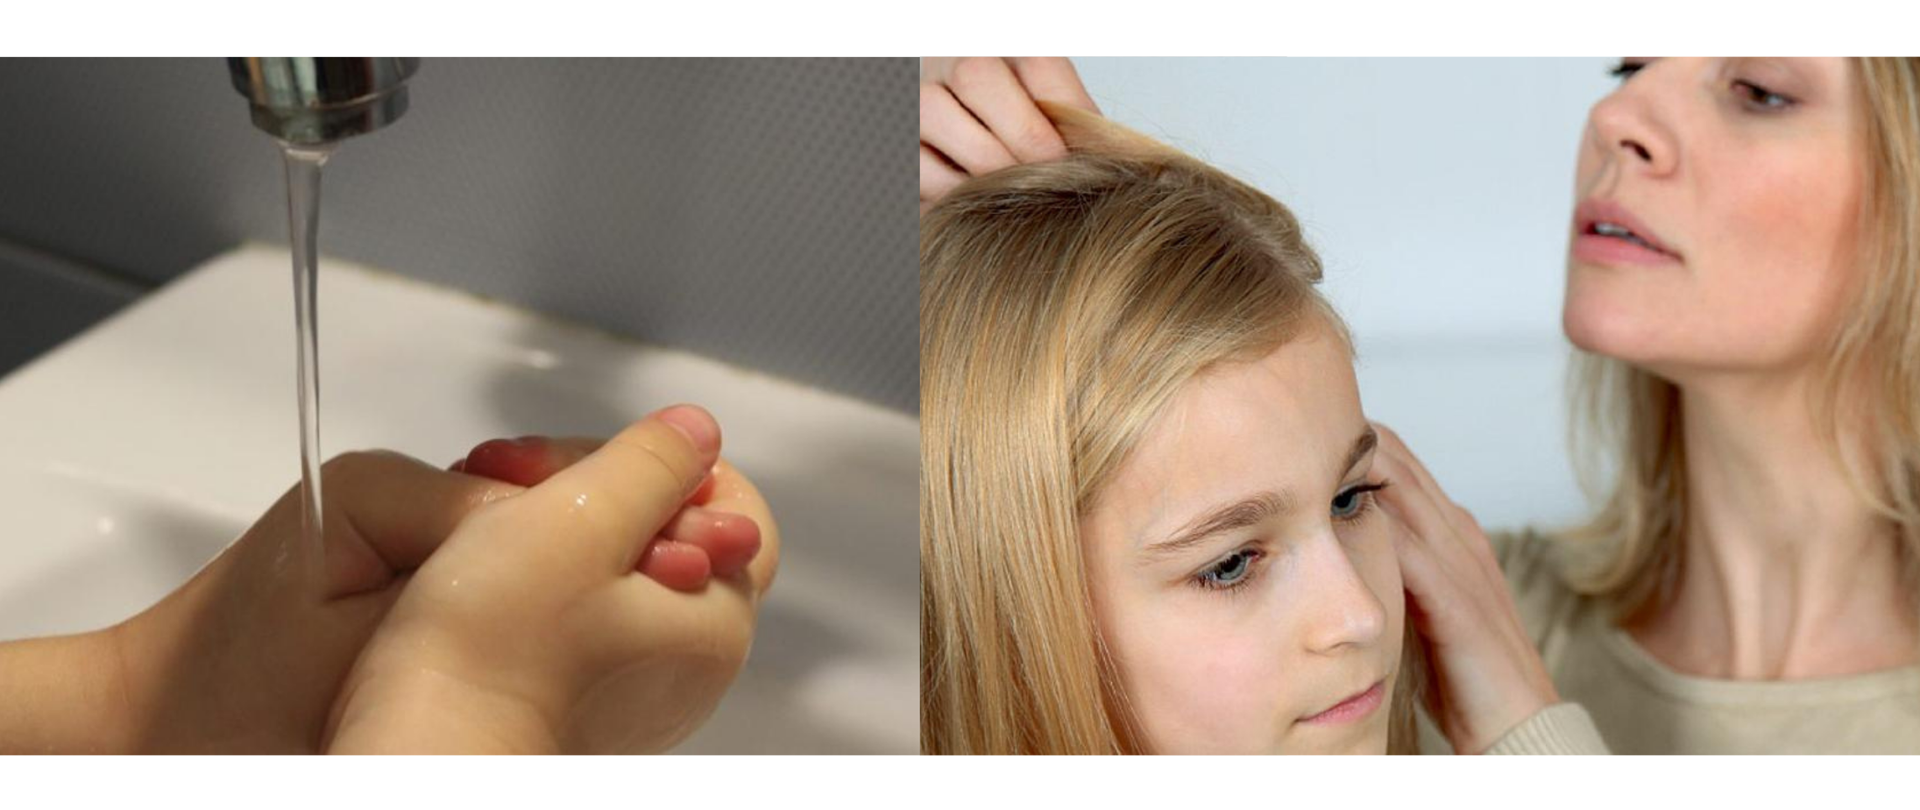 Zdrowie w szkole - zestawienie dwóch zdjęć, na pierwszym widoczna jest czynność mycia rąk przez dziecko, na drugim kobieta przeglądająca dziewczynce włosy 